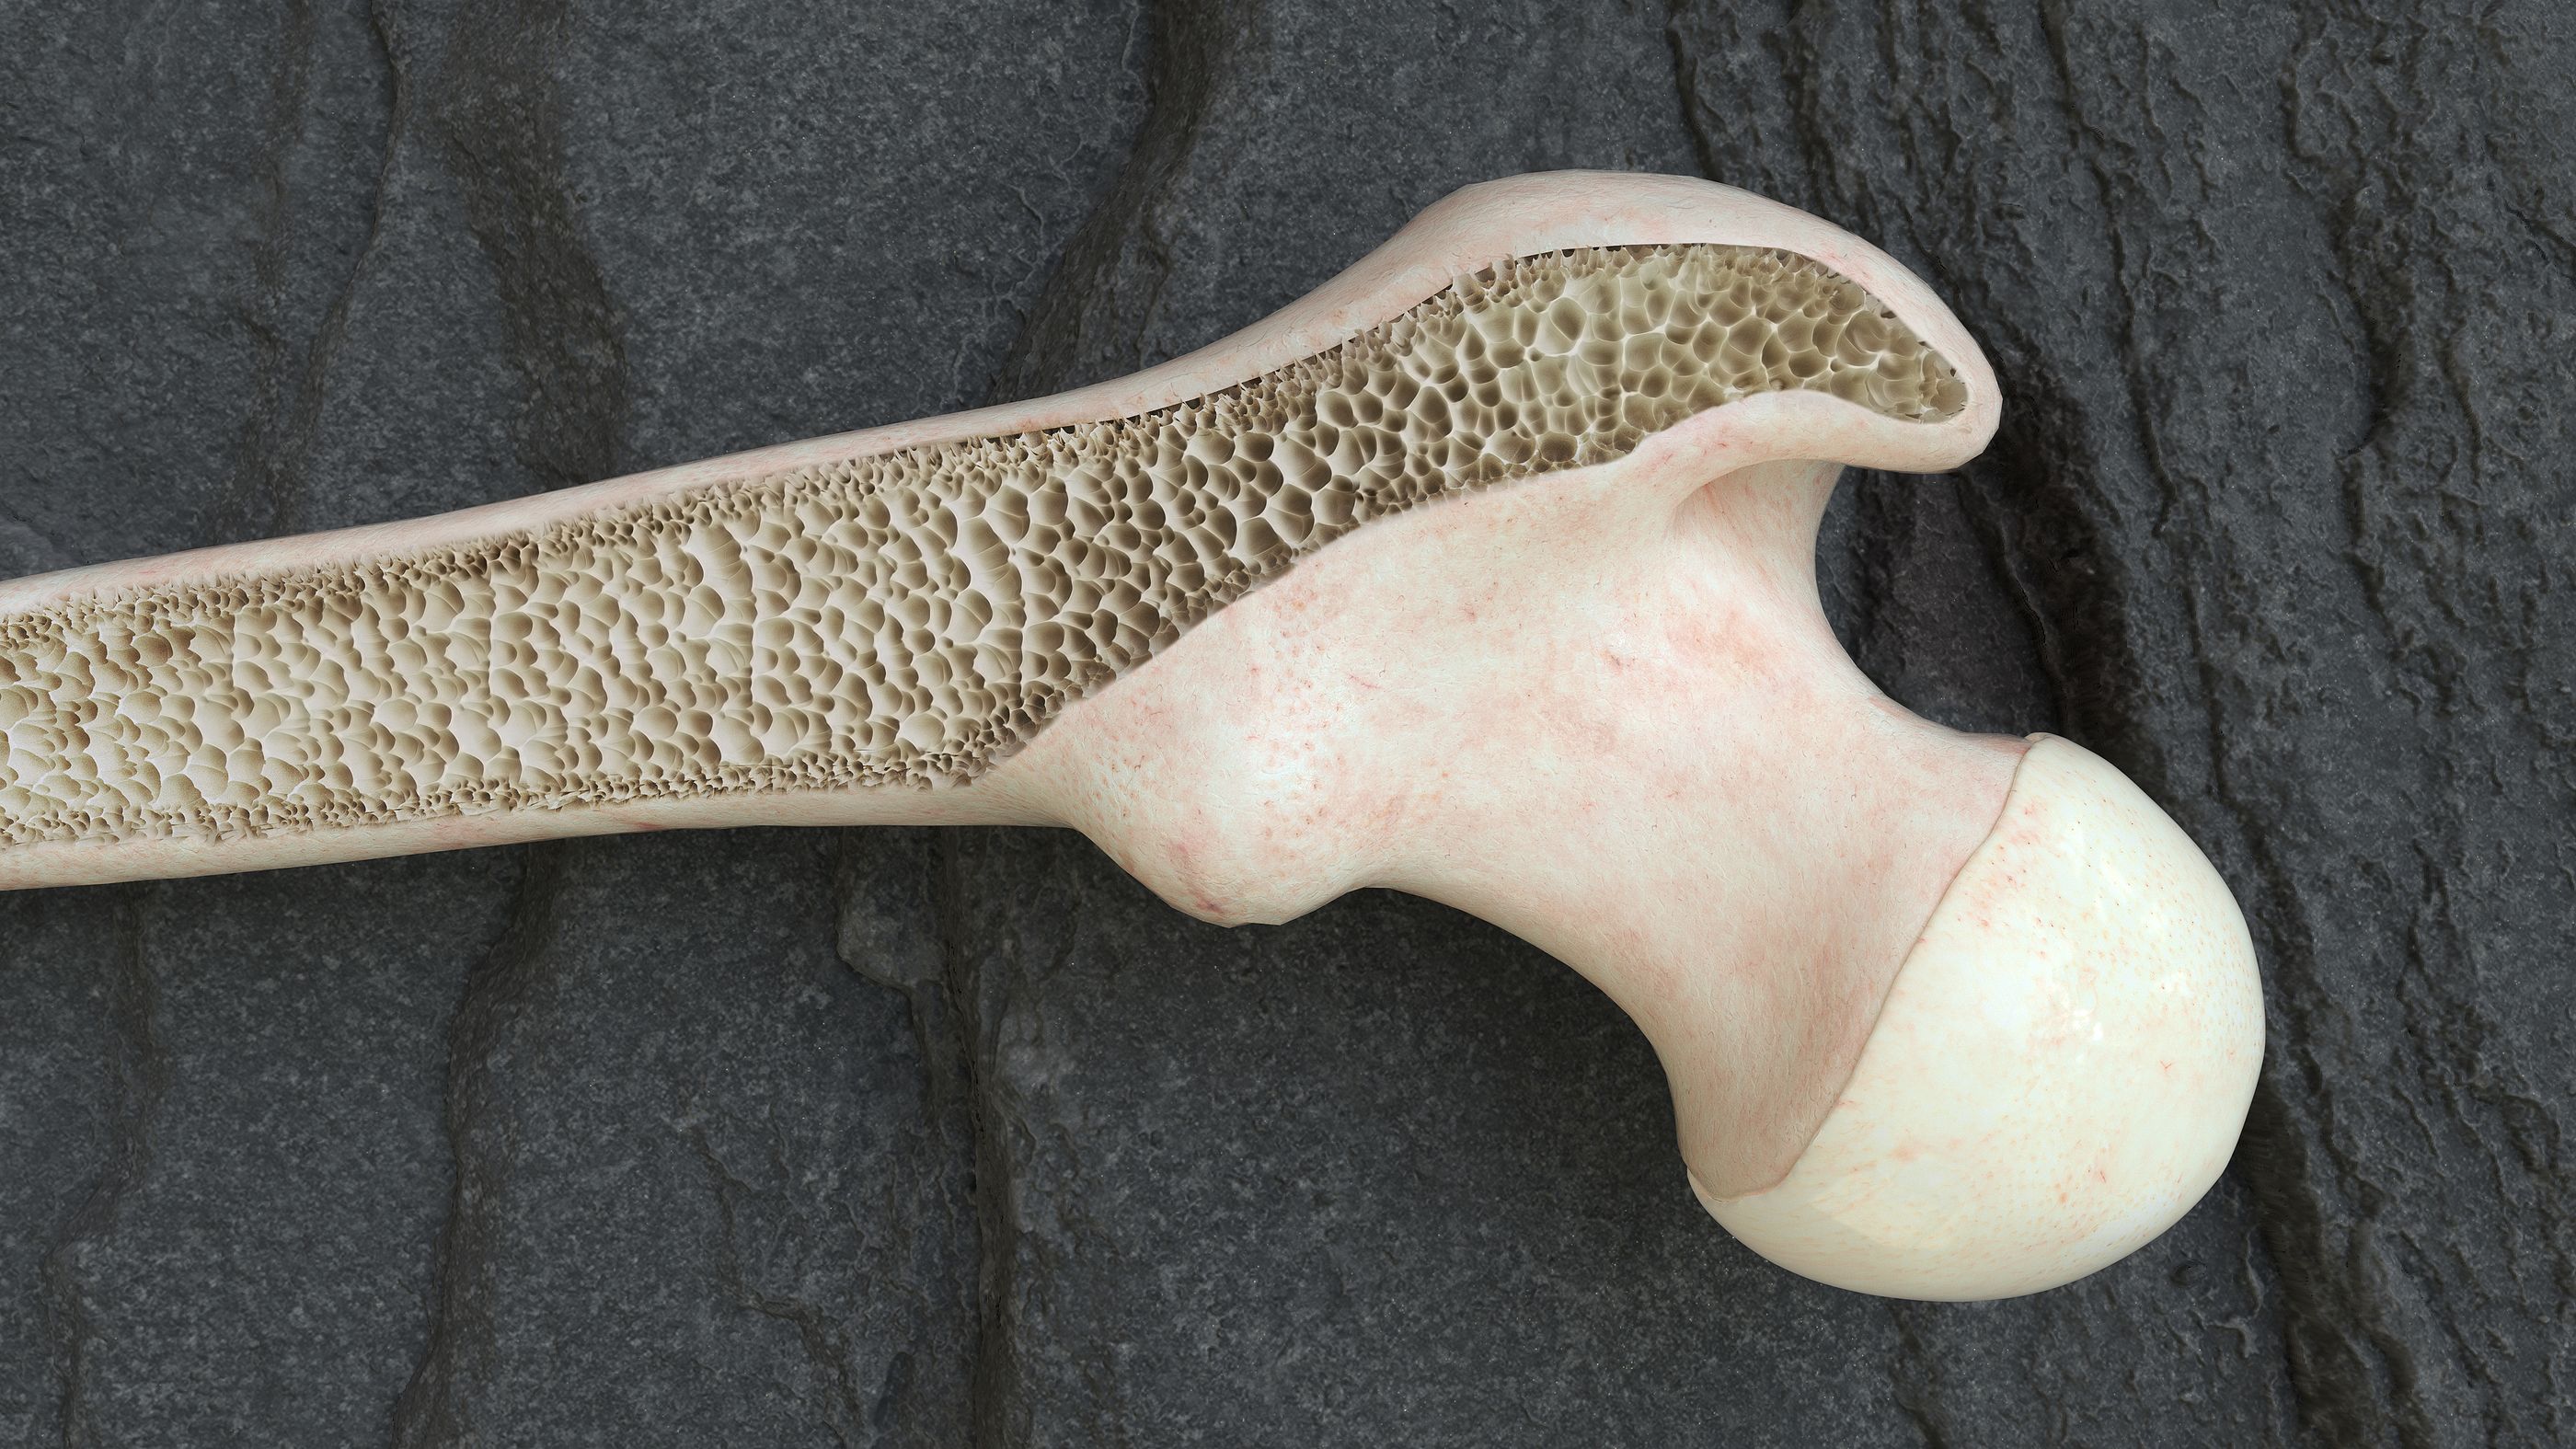 Crean modelos virtuales de huesos con osteoporosis para ayudar a predecir el riesgo de fractura